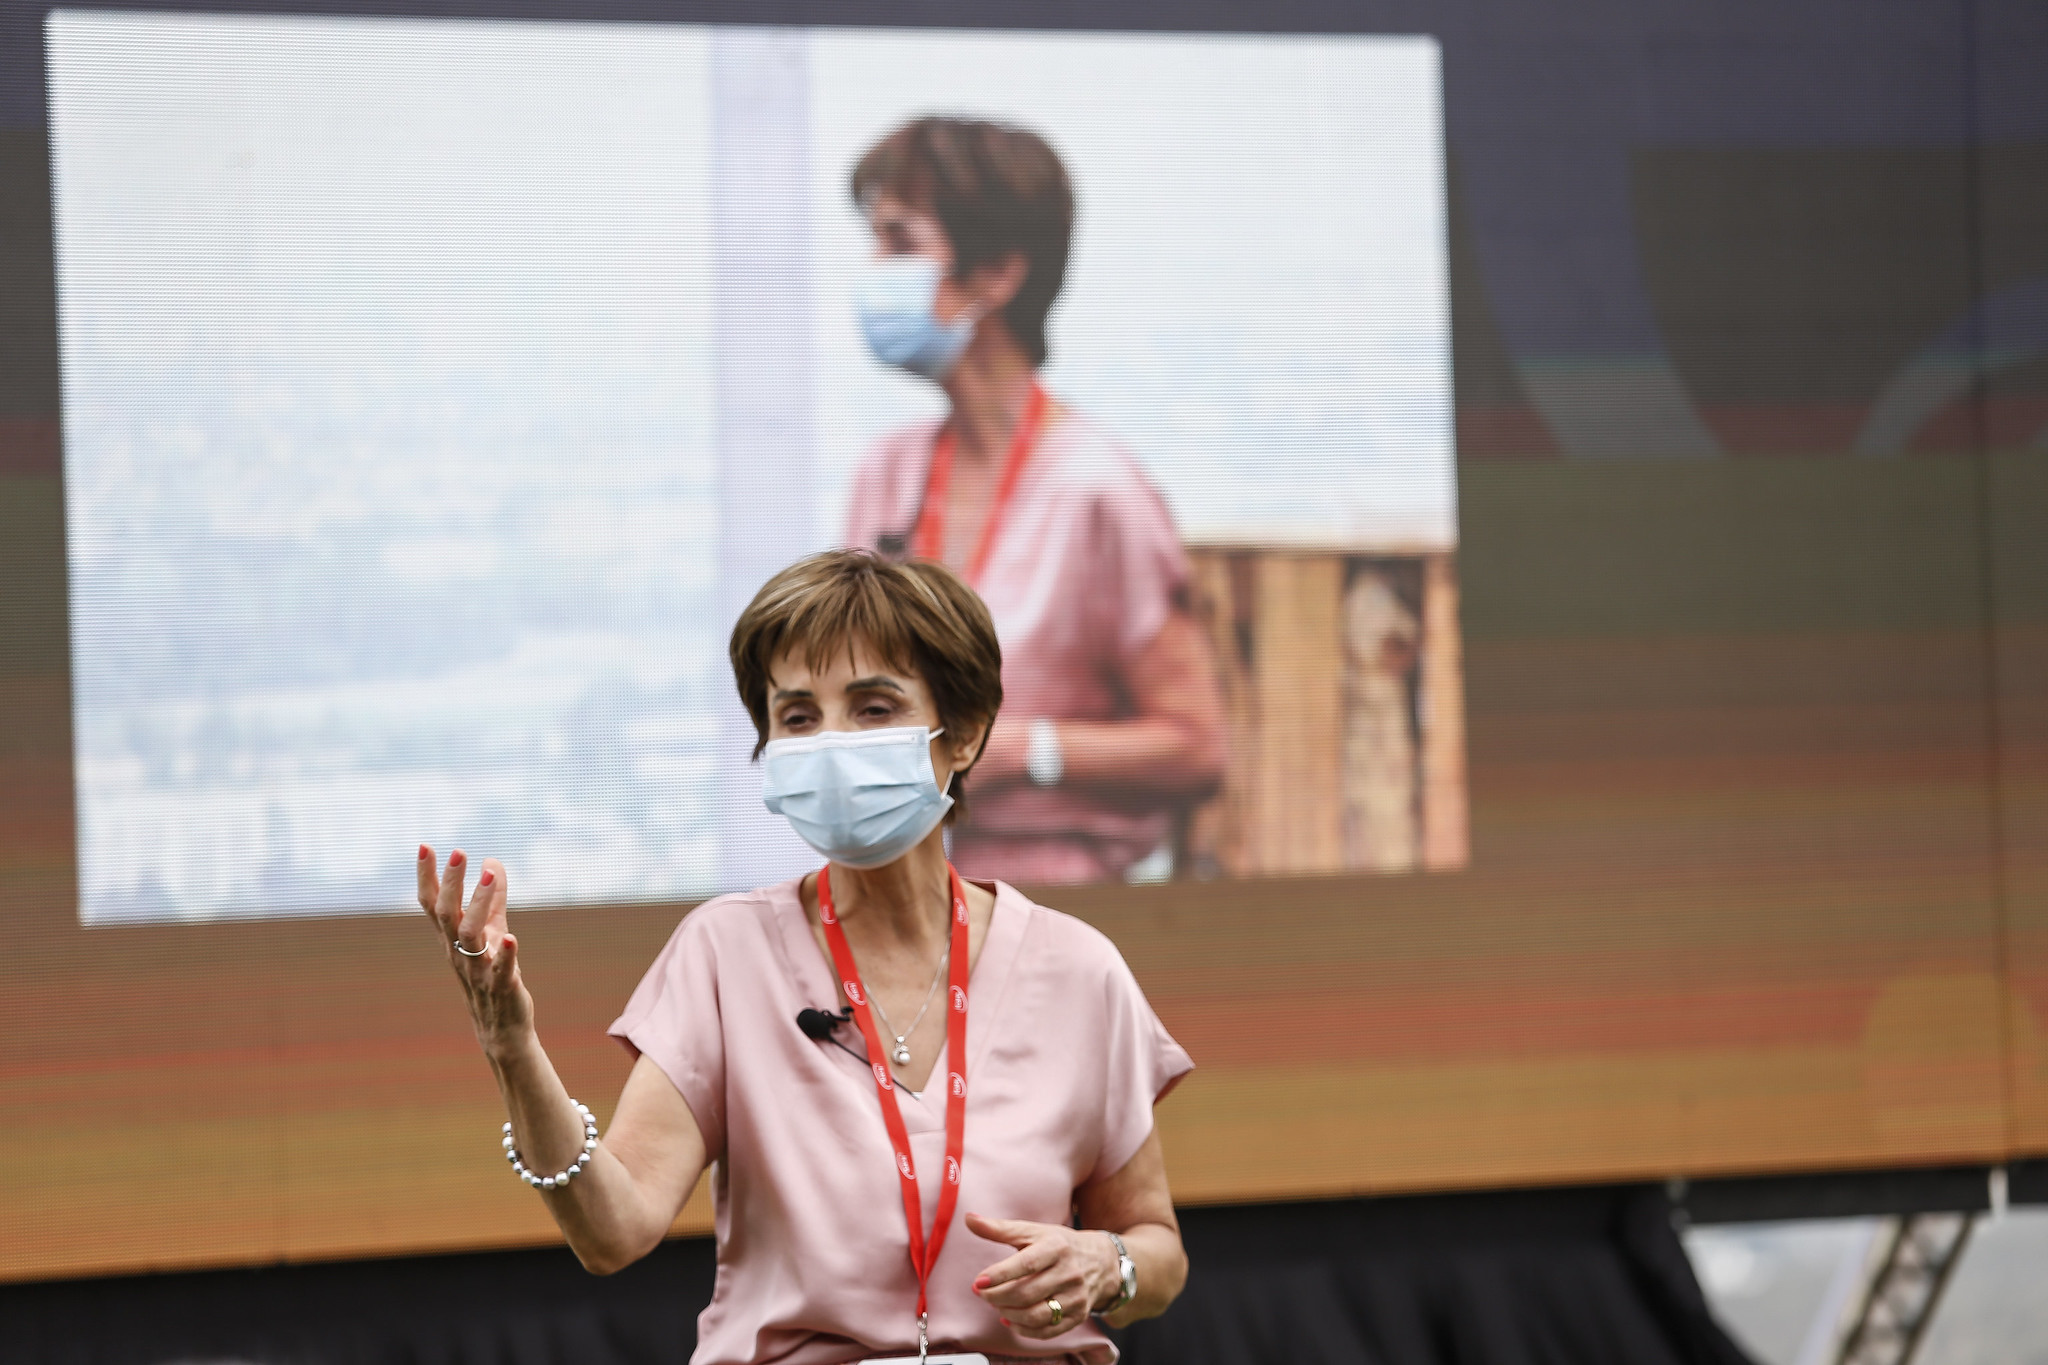  Subsecretaria Paula Daza participa en ENADE y destaca colaboración público-privada durante la pandemia